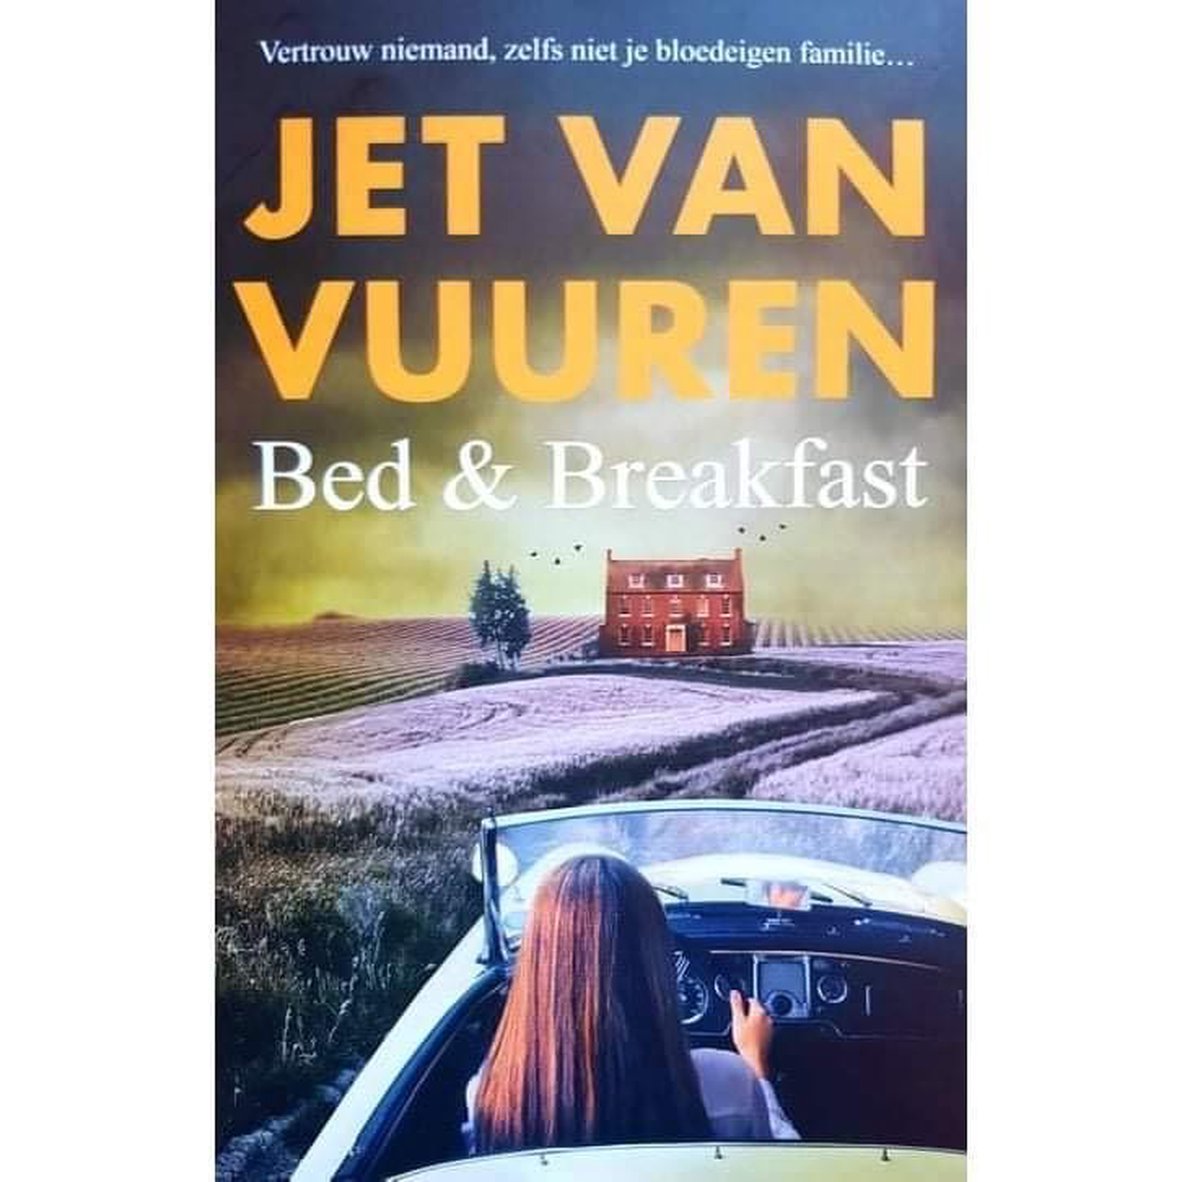 Bed & Breakfast van Jet Van Vuuren 1 x nieuw en 3 x tweedehands te koop -  omero.nl